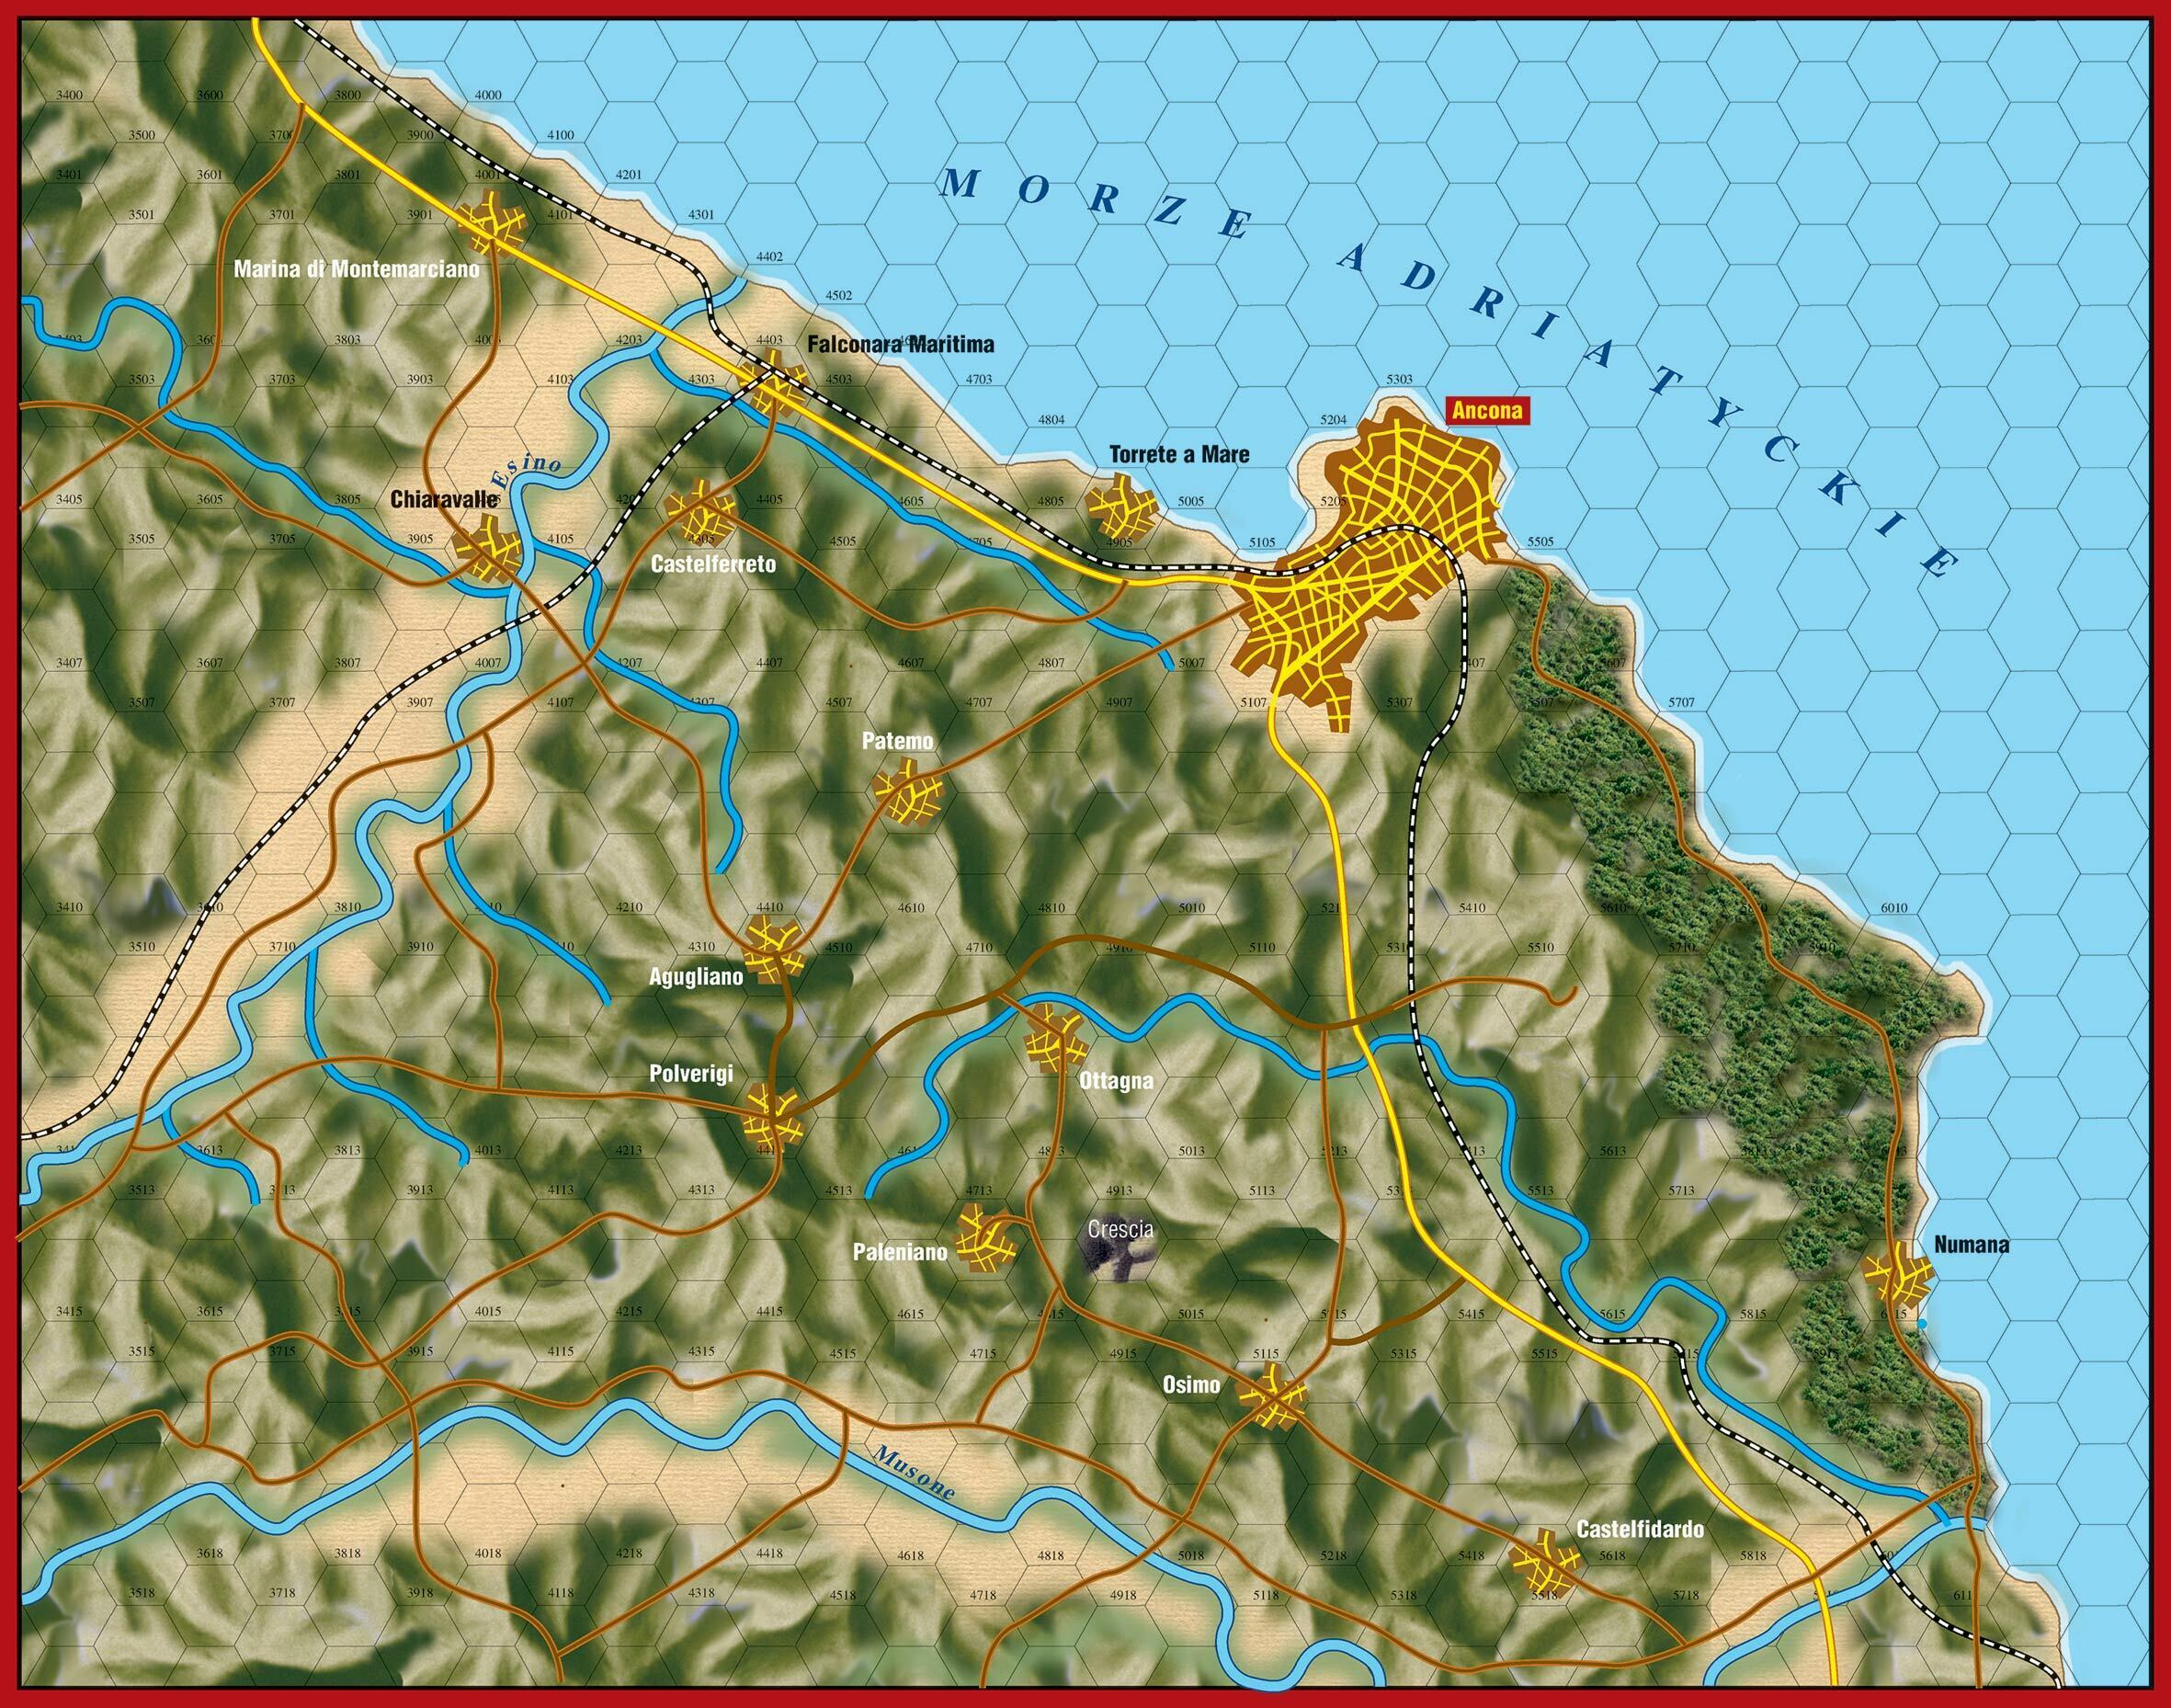 Mapa do gry planszowej o bitwie pod Anconą